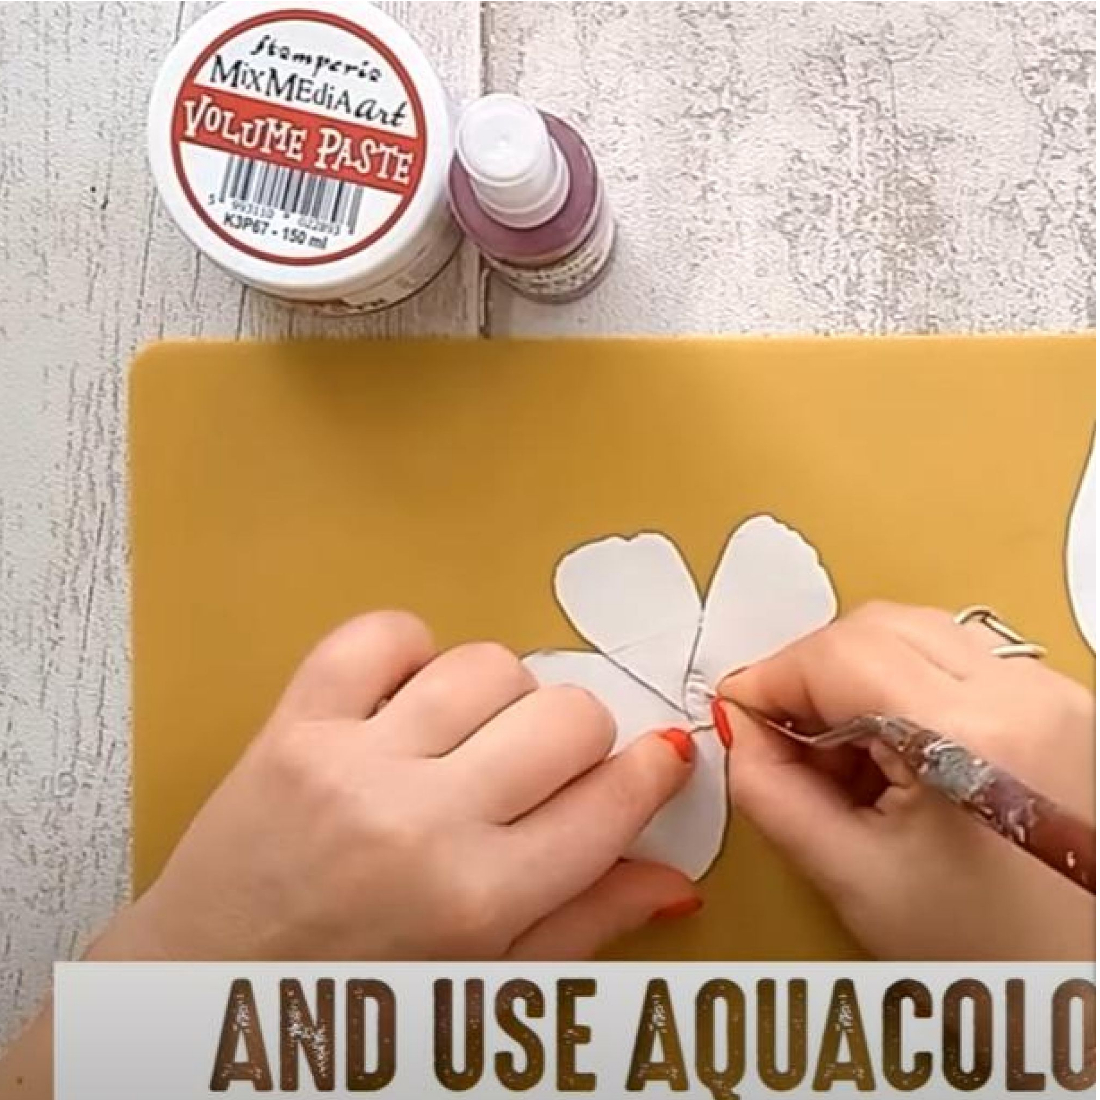 Tinta AquaColor Spray Mix Média stamperia